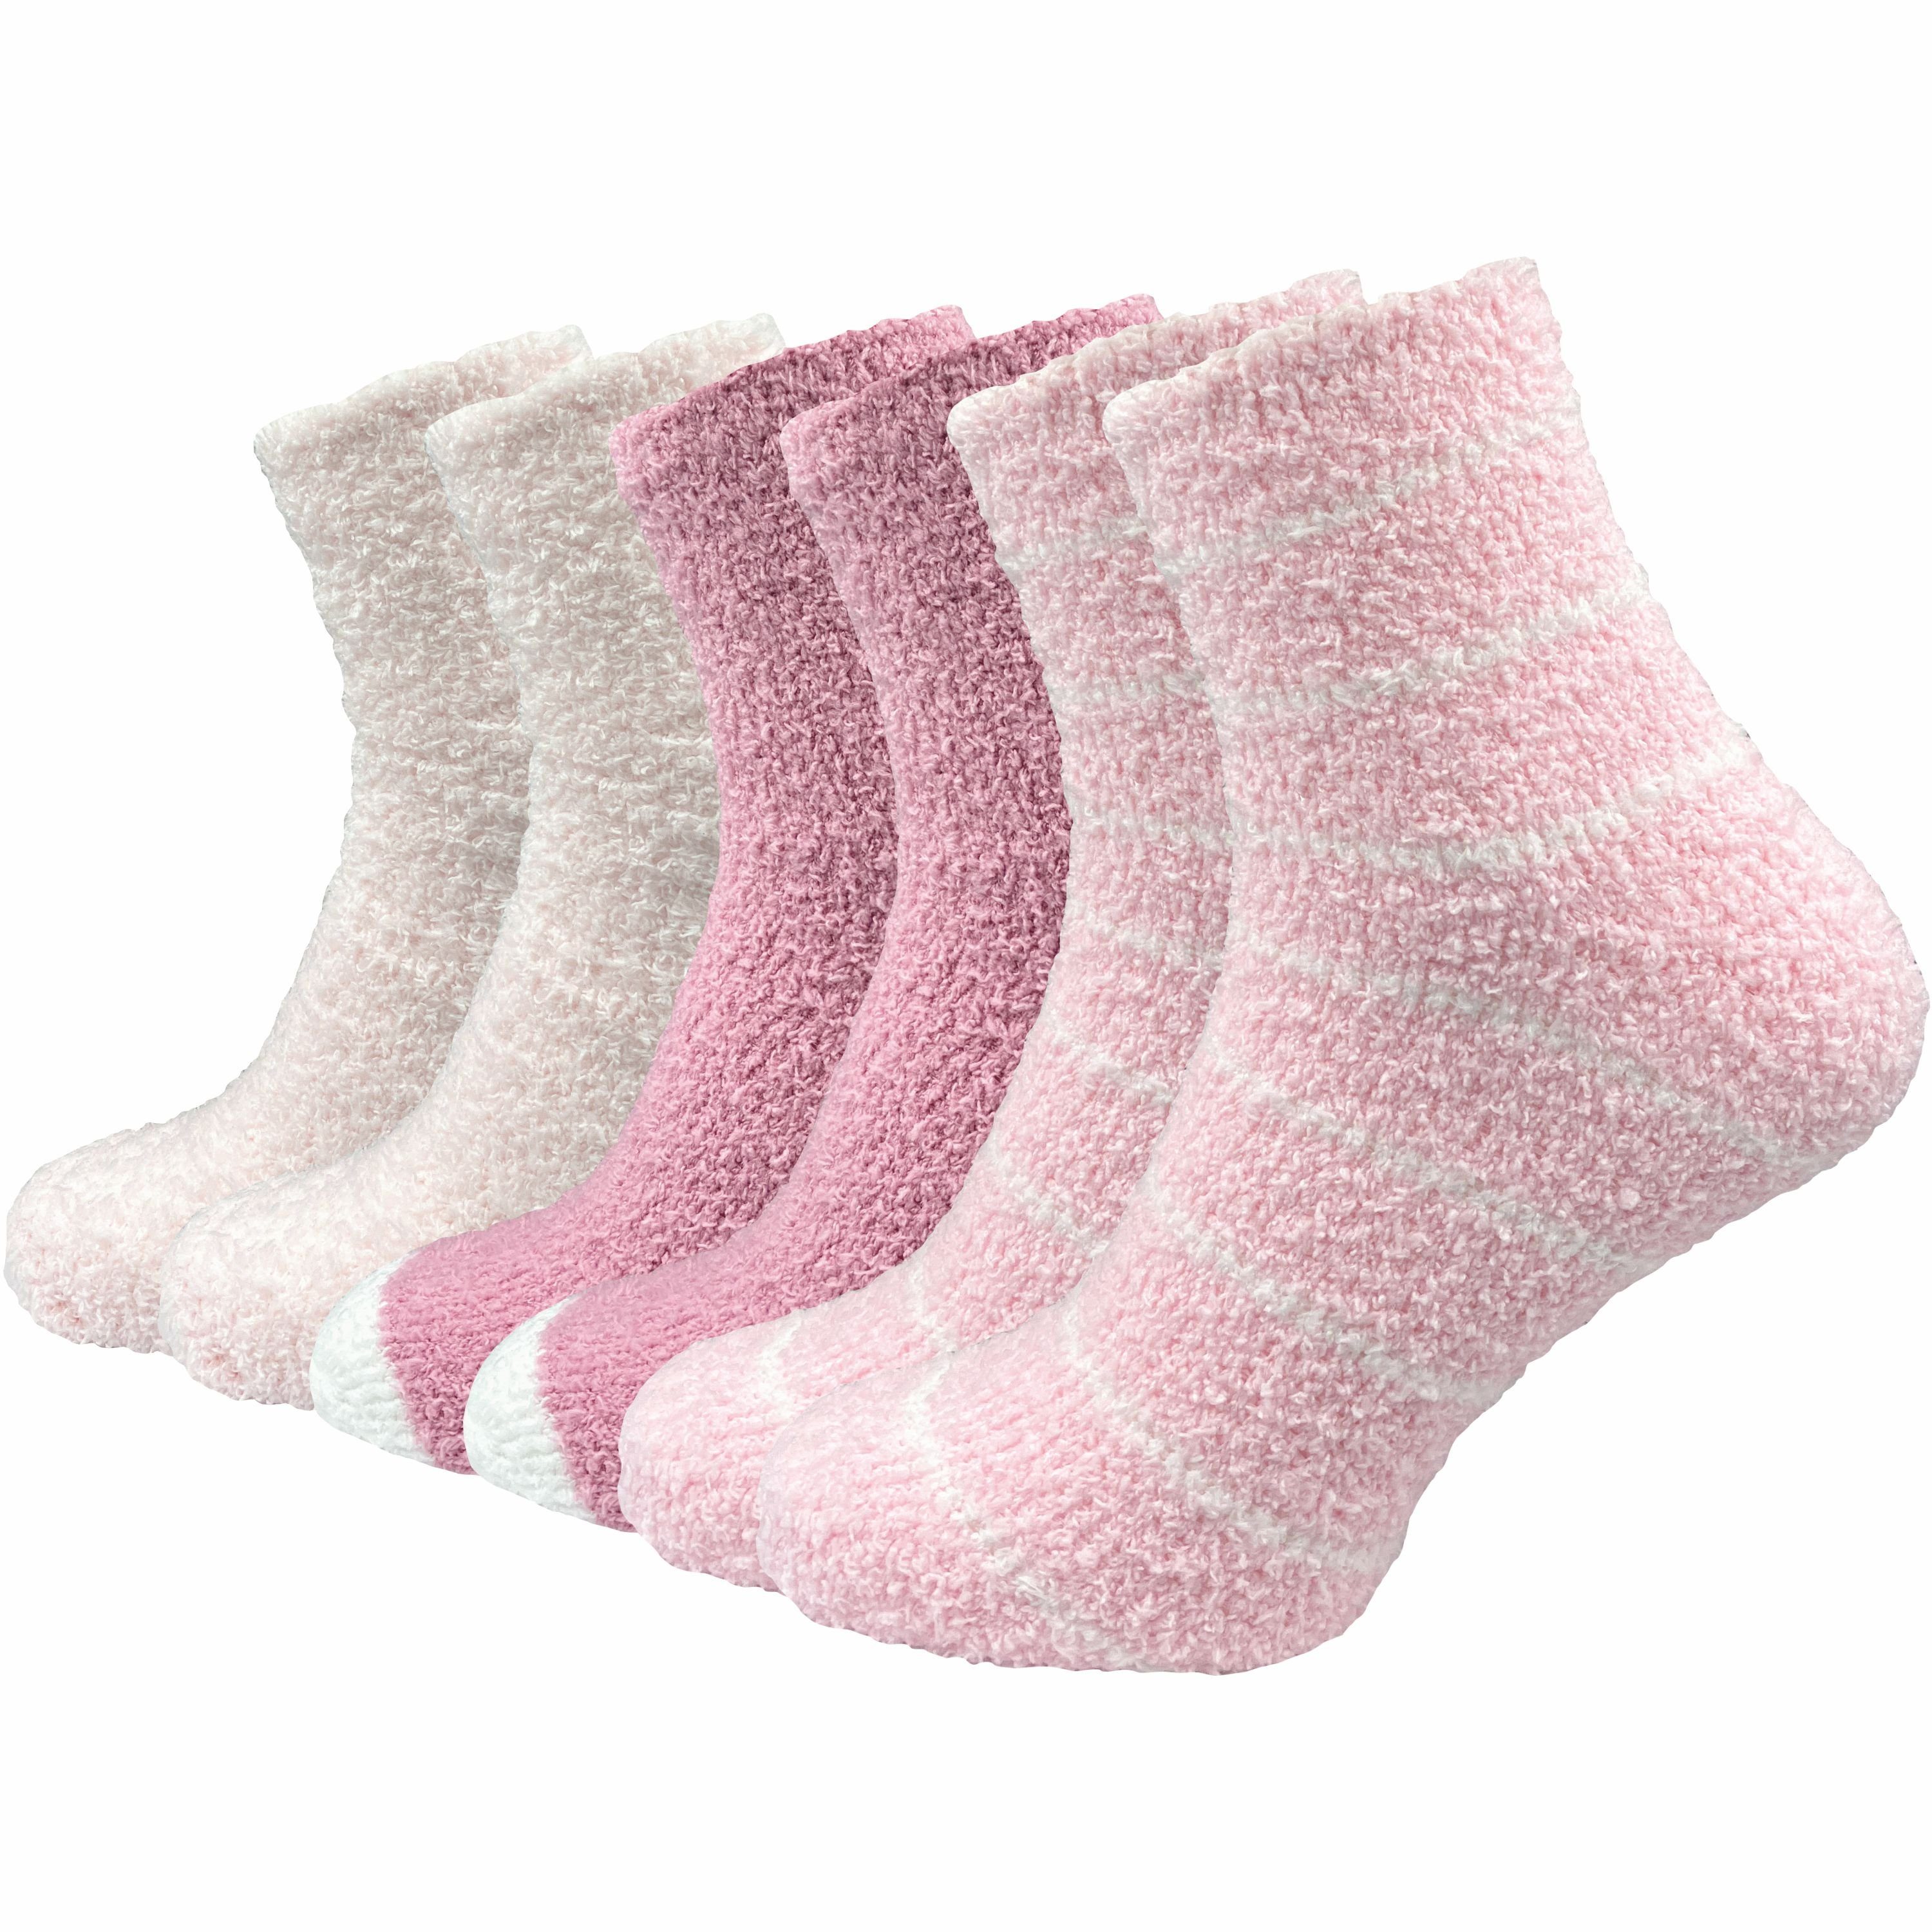 GAWILO Мягкие носочки für Damen für warme Füße an kalten Tagen - extra weich & flauschig (6 Paar) Носки для дома aus flauschigem Material für optimalen Tragekomfort